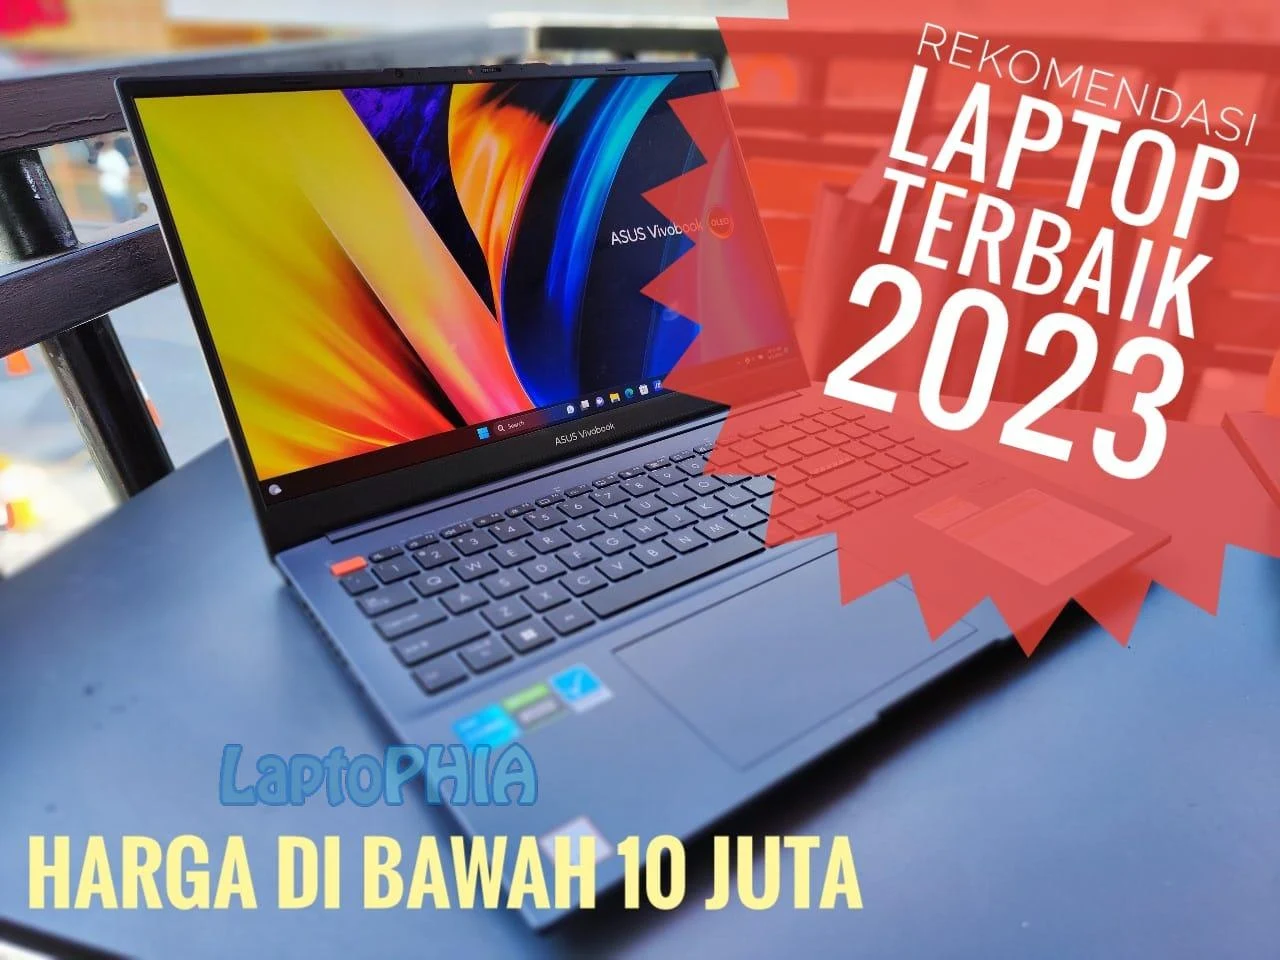 Rekomendasi Laptop Terbaik 2023 Harga di Bawah 10 Juta, Pilih Mana?